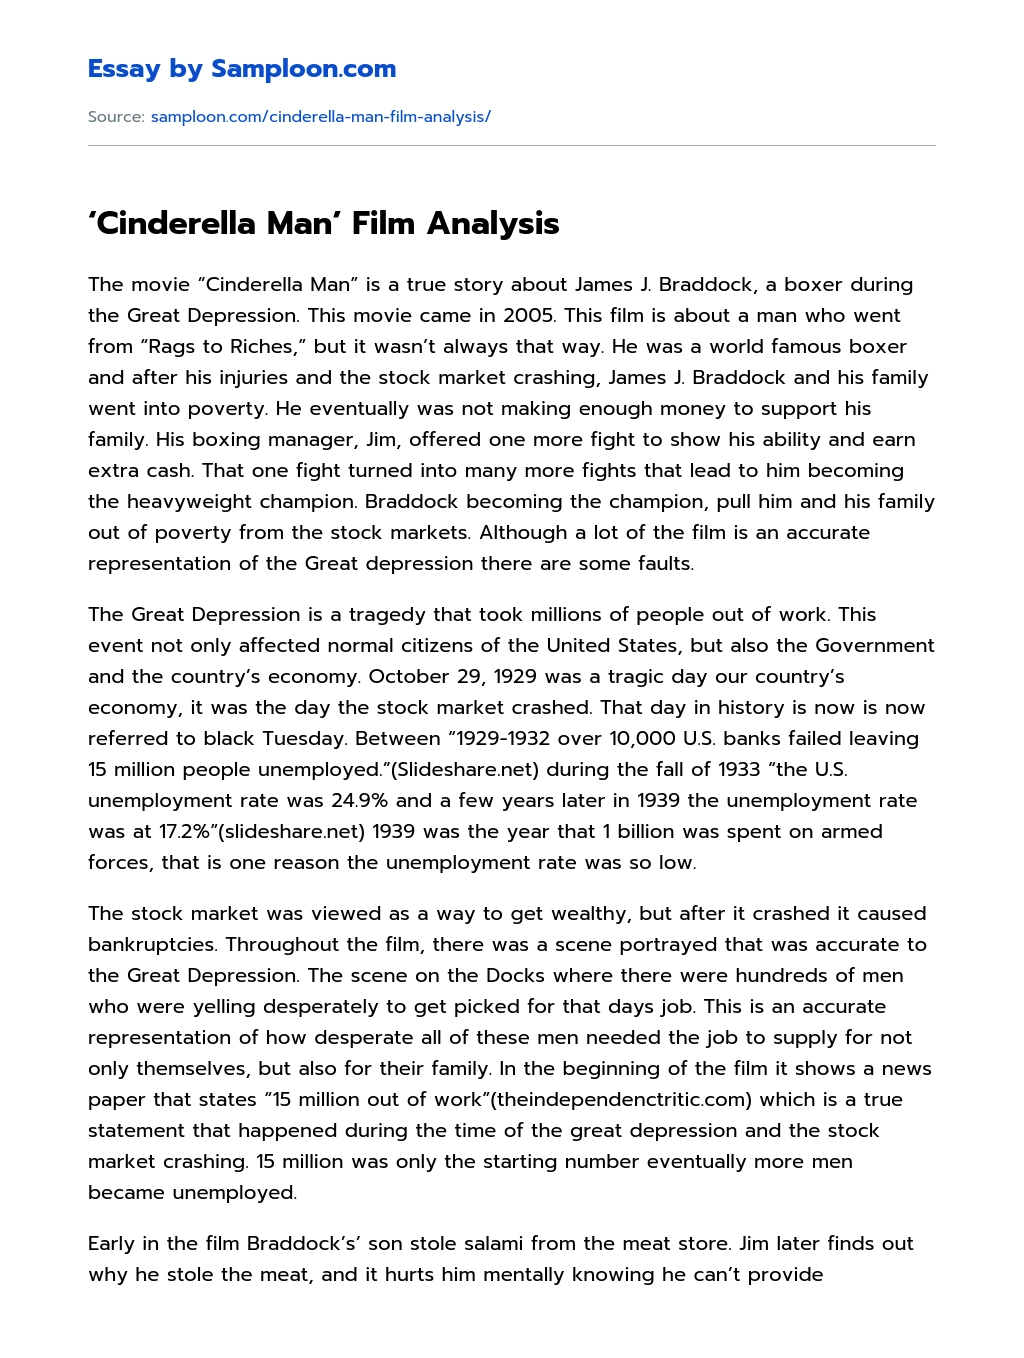 ‘Cinderella Man’ Film Analysis essay